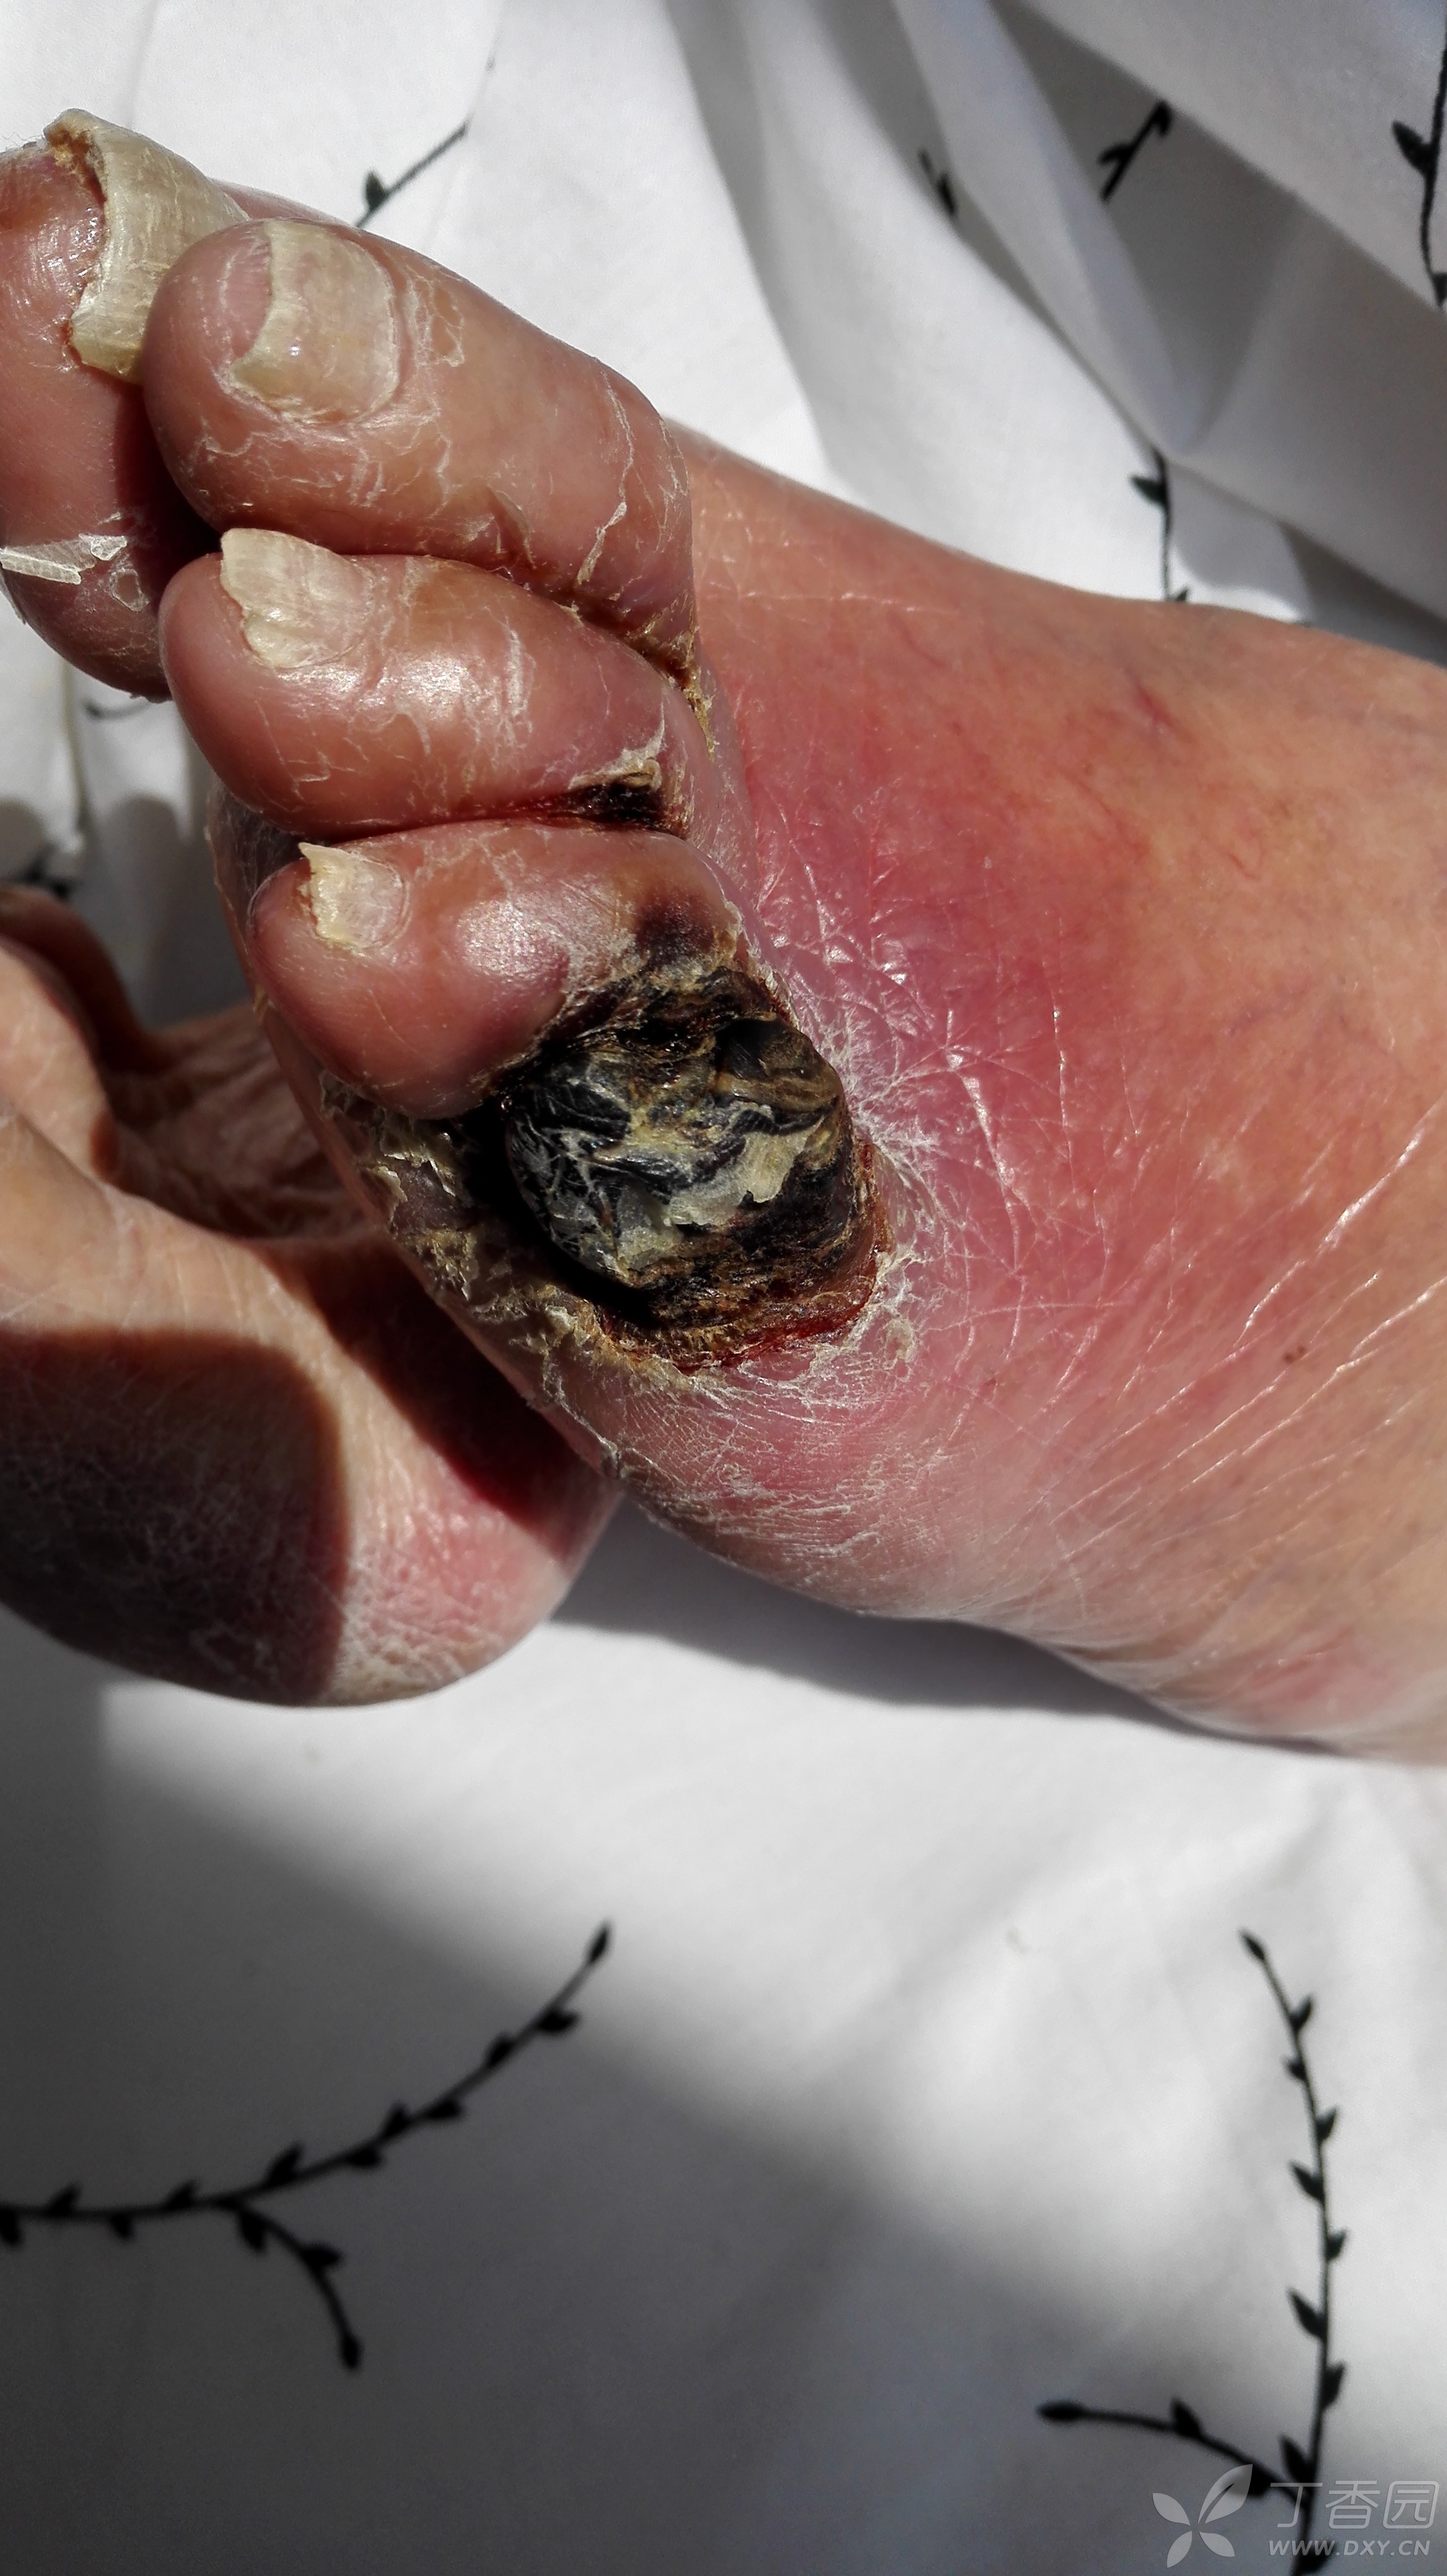 坏疽:患者女89岁,左小趾变黑破溃伴剧烈疼痛3月